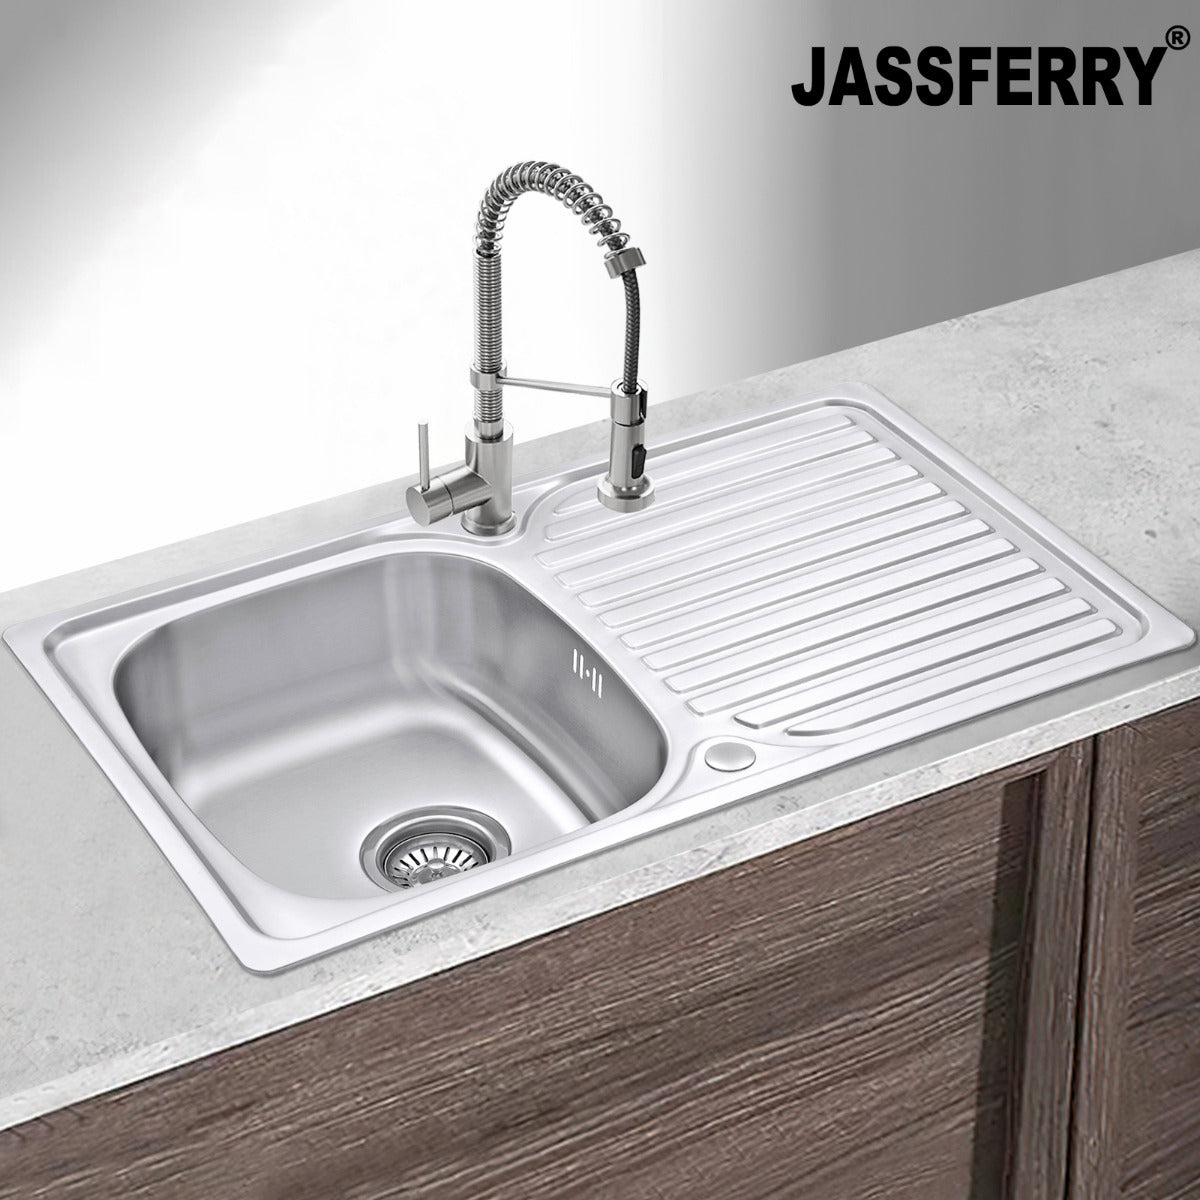 JassferryJASSFERRY Stainless Steel Kitchen Sink Inset Single 1 Bowl Reversible Drainer - 834BKitchen Sinks